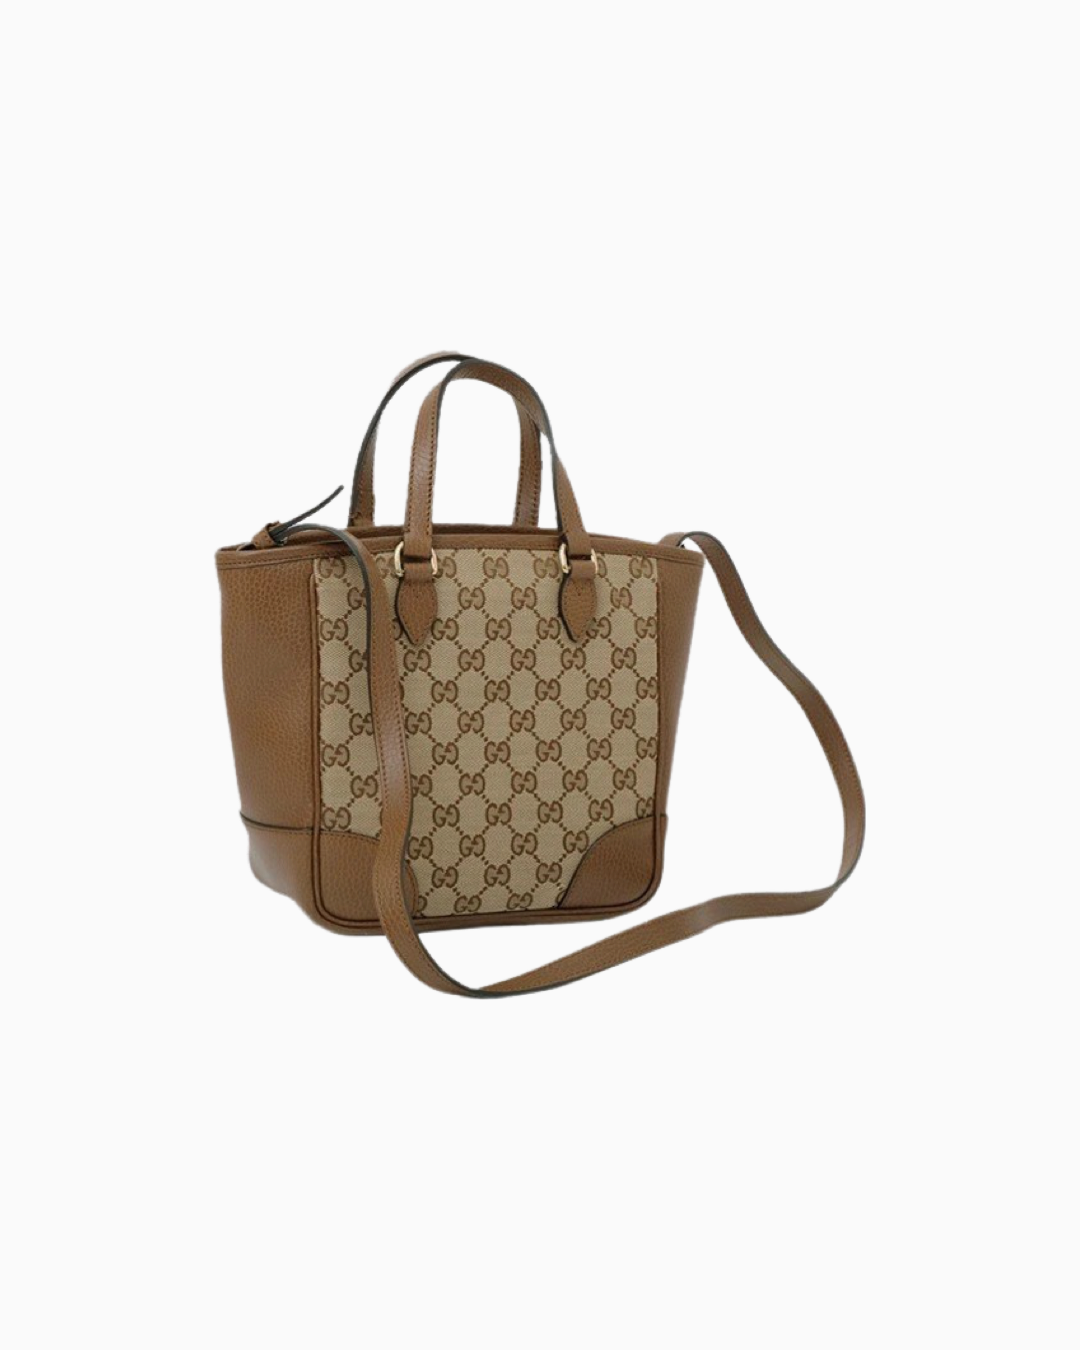 Gucci Bree GG Canvas Mini Tote Bag